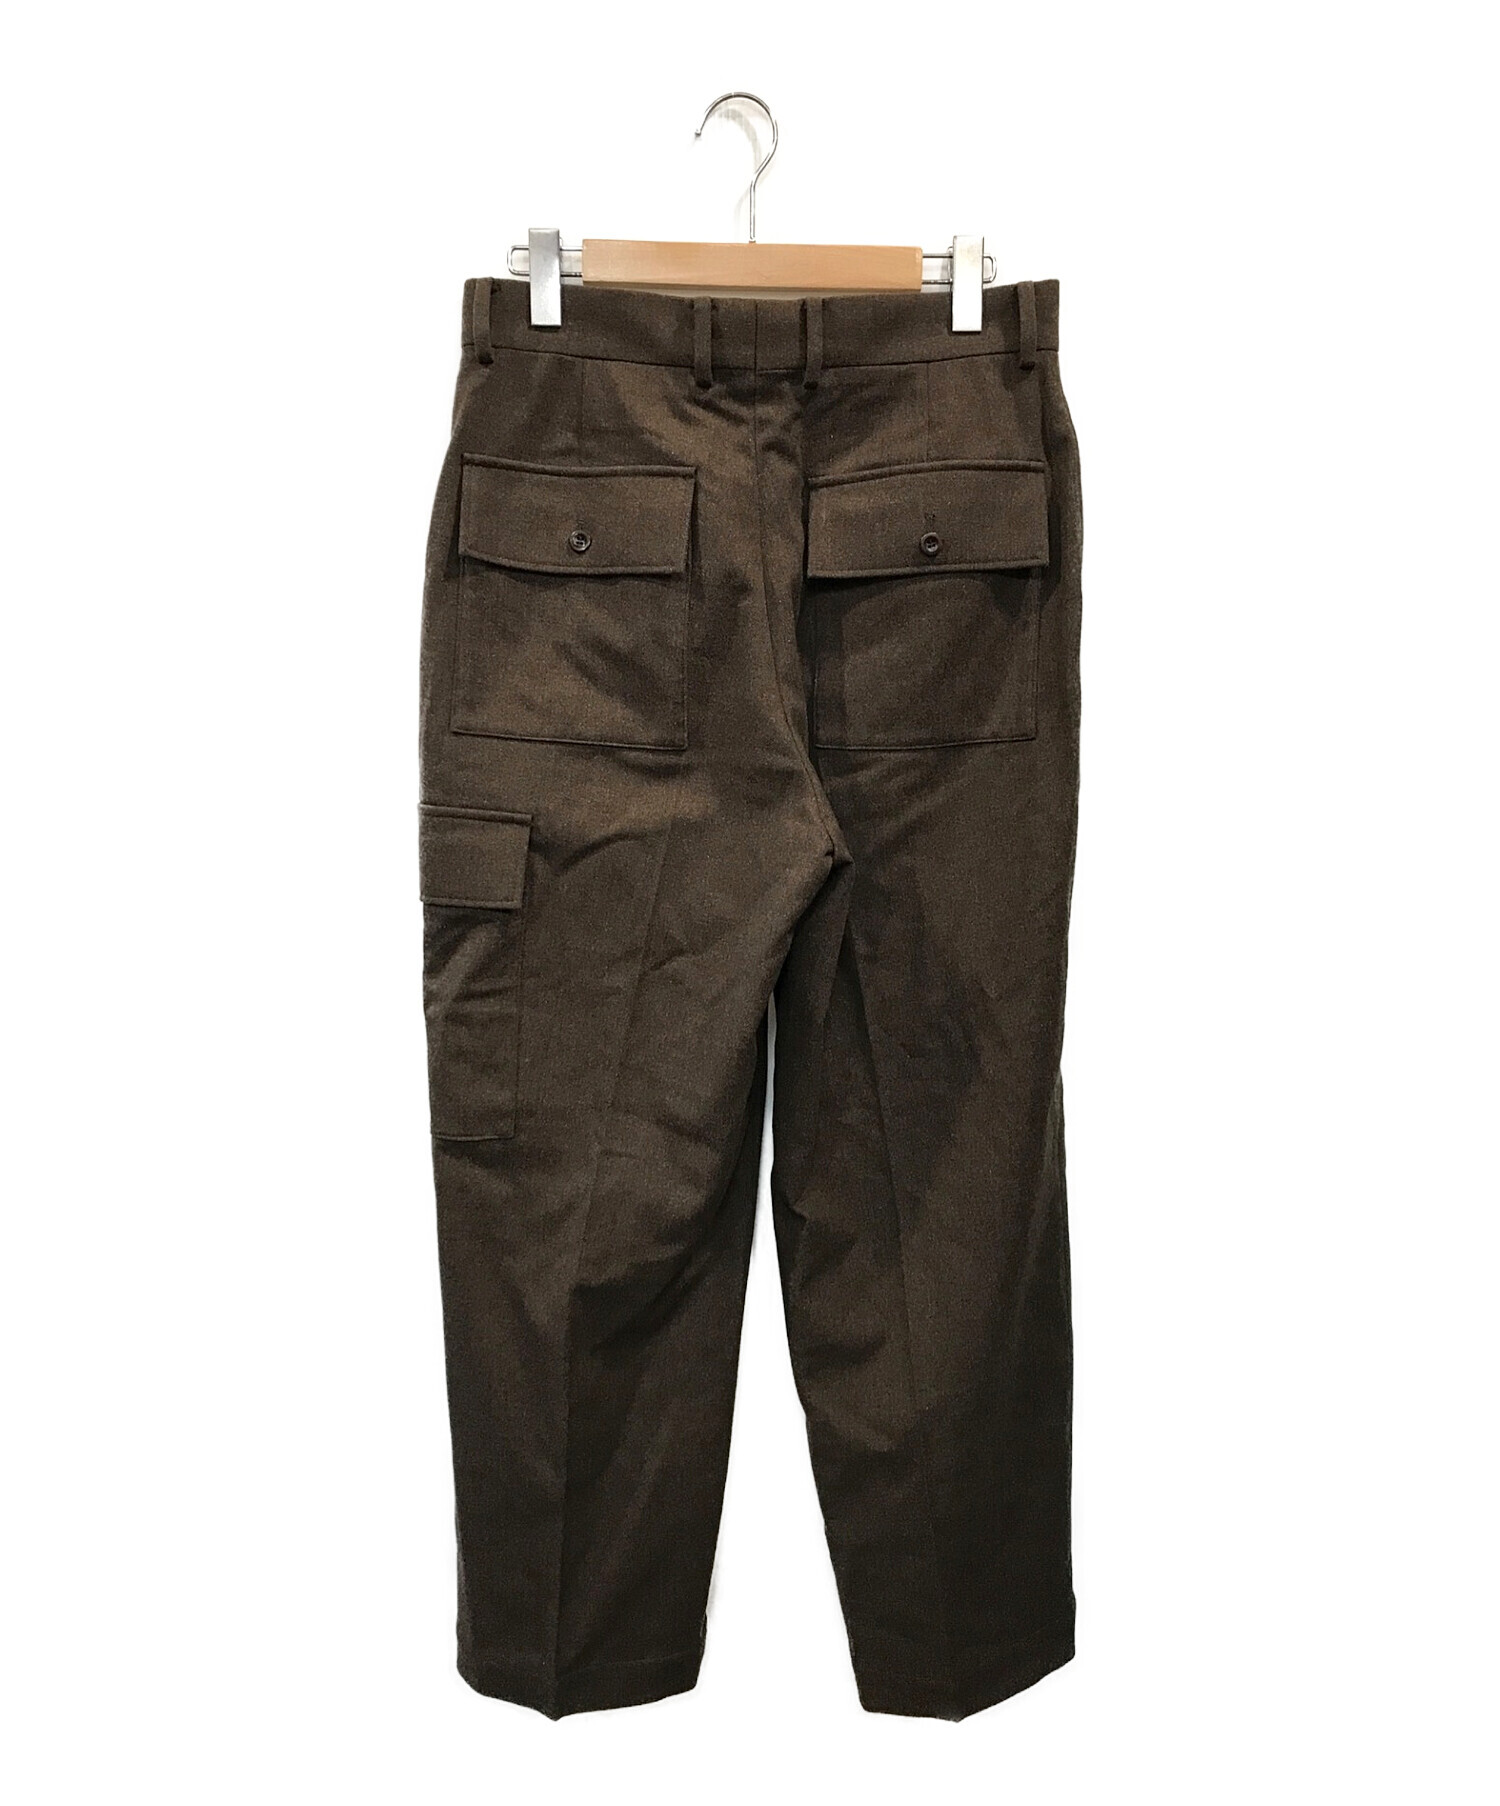 中古・古着通販】HERILL (ヘリル) Blacksheep Cargo pants ブラウン